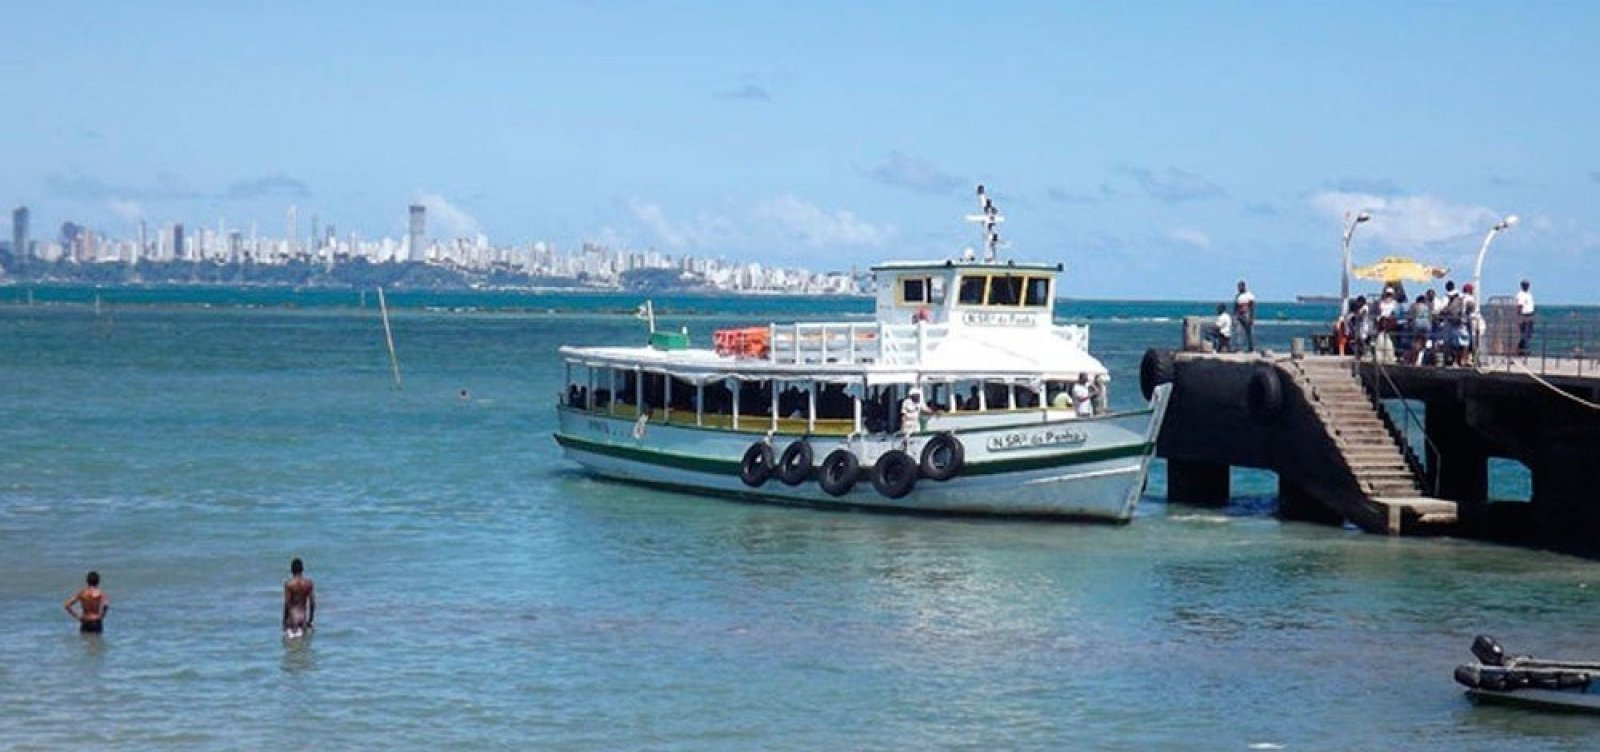 Travessia Salvador-Mar Grande opera com seis embarcações neste domingo e tem movimento tranquilo